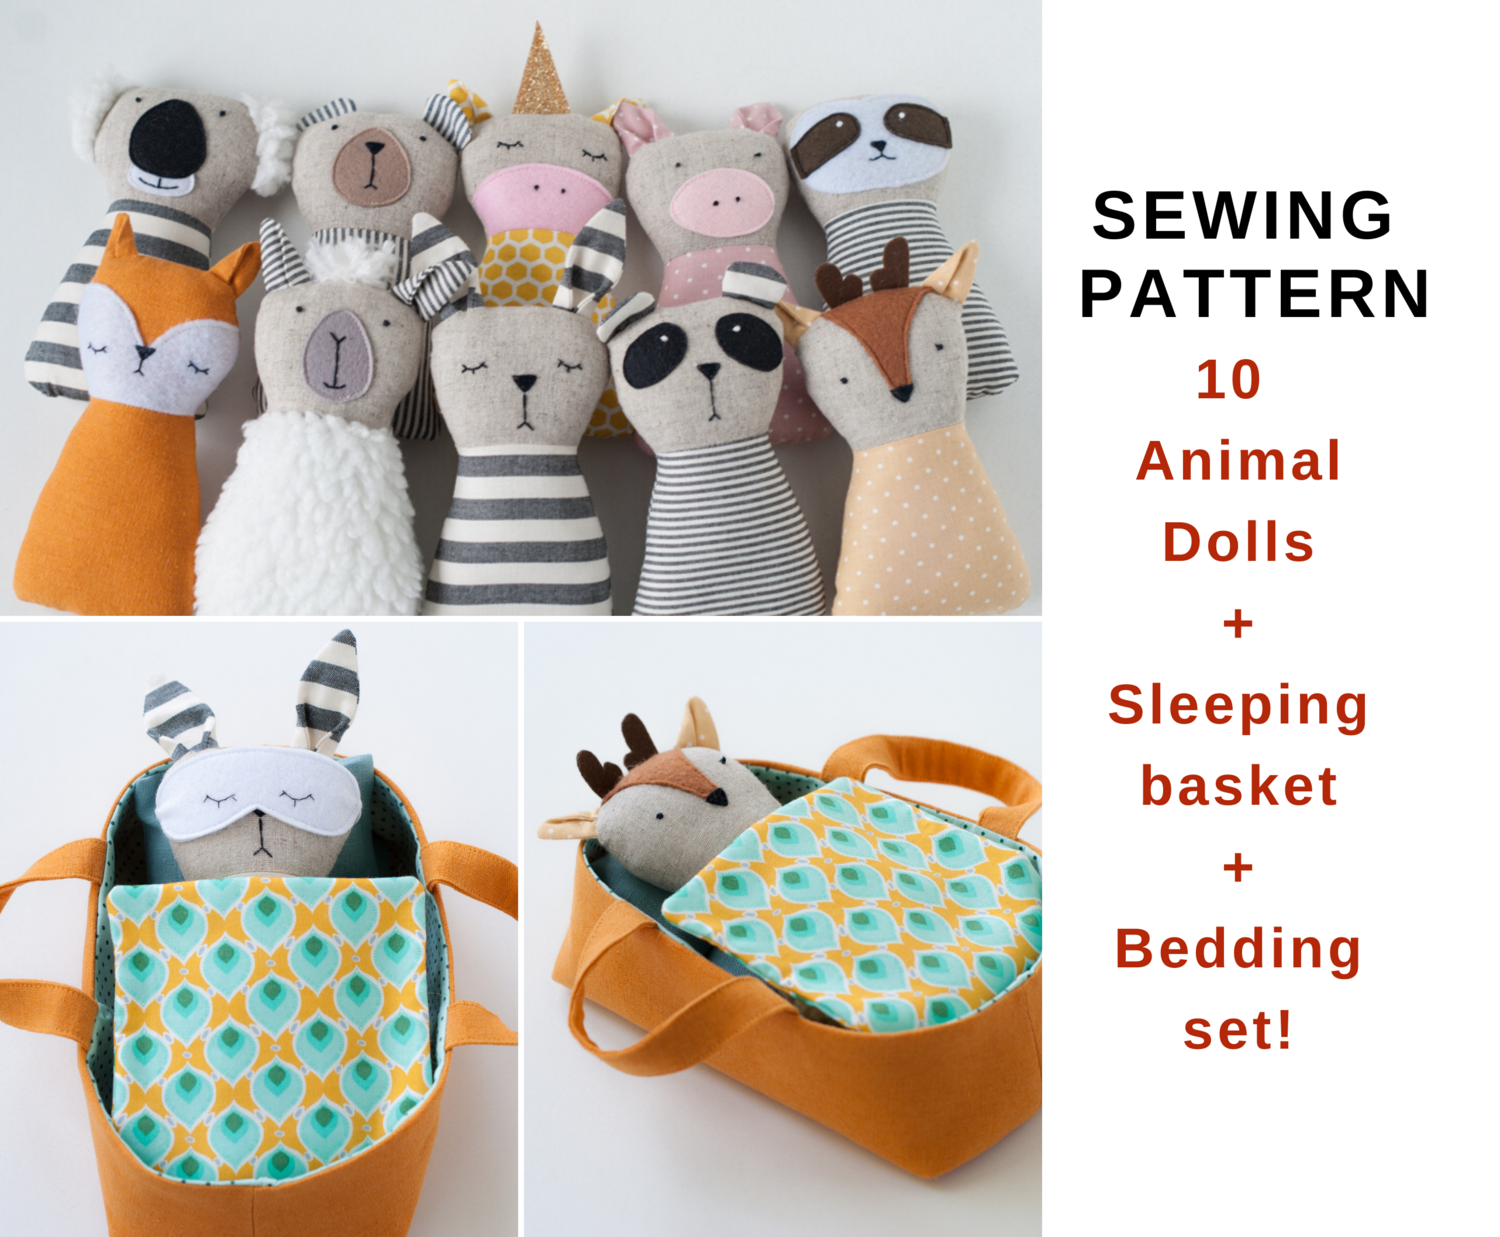 10 Animal Dolls+Sleeping basket+Bedding. Sewing pattern PDF